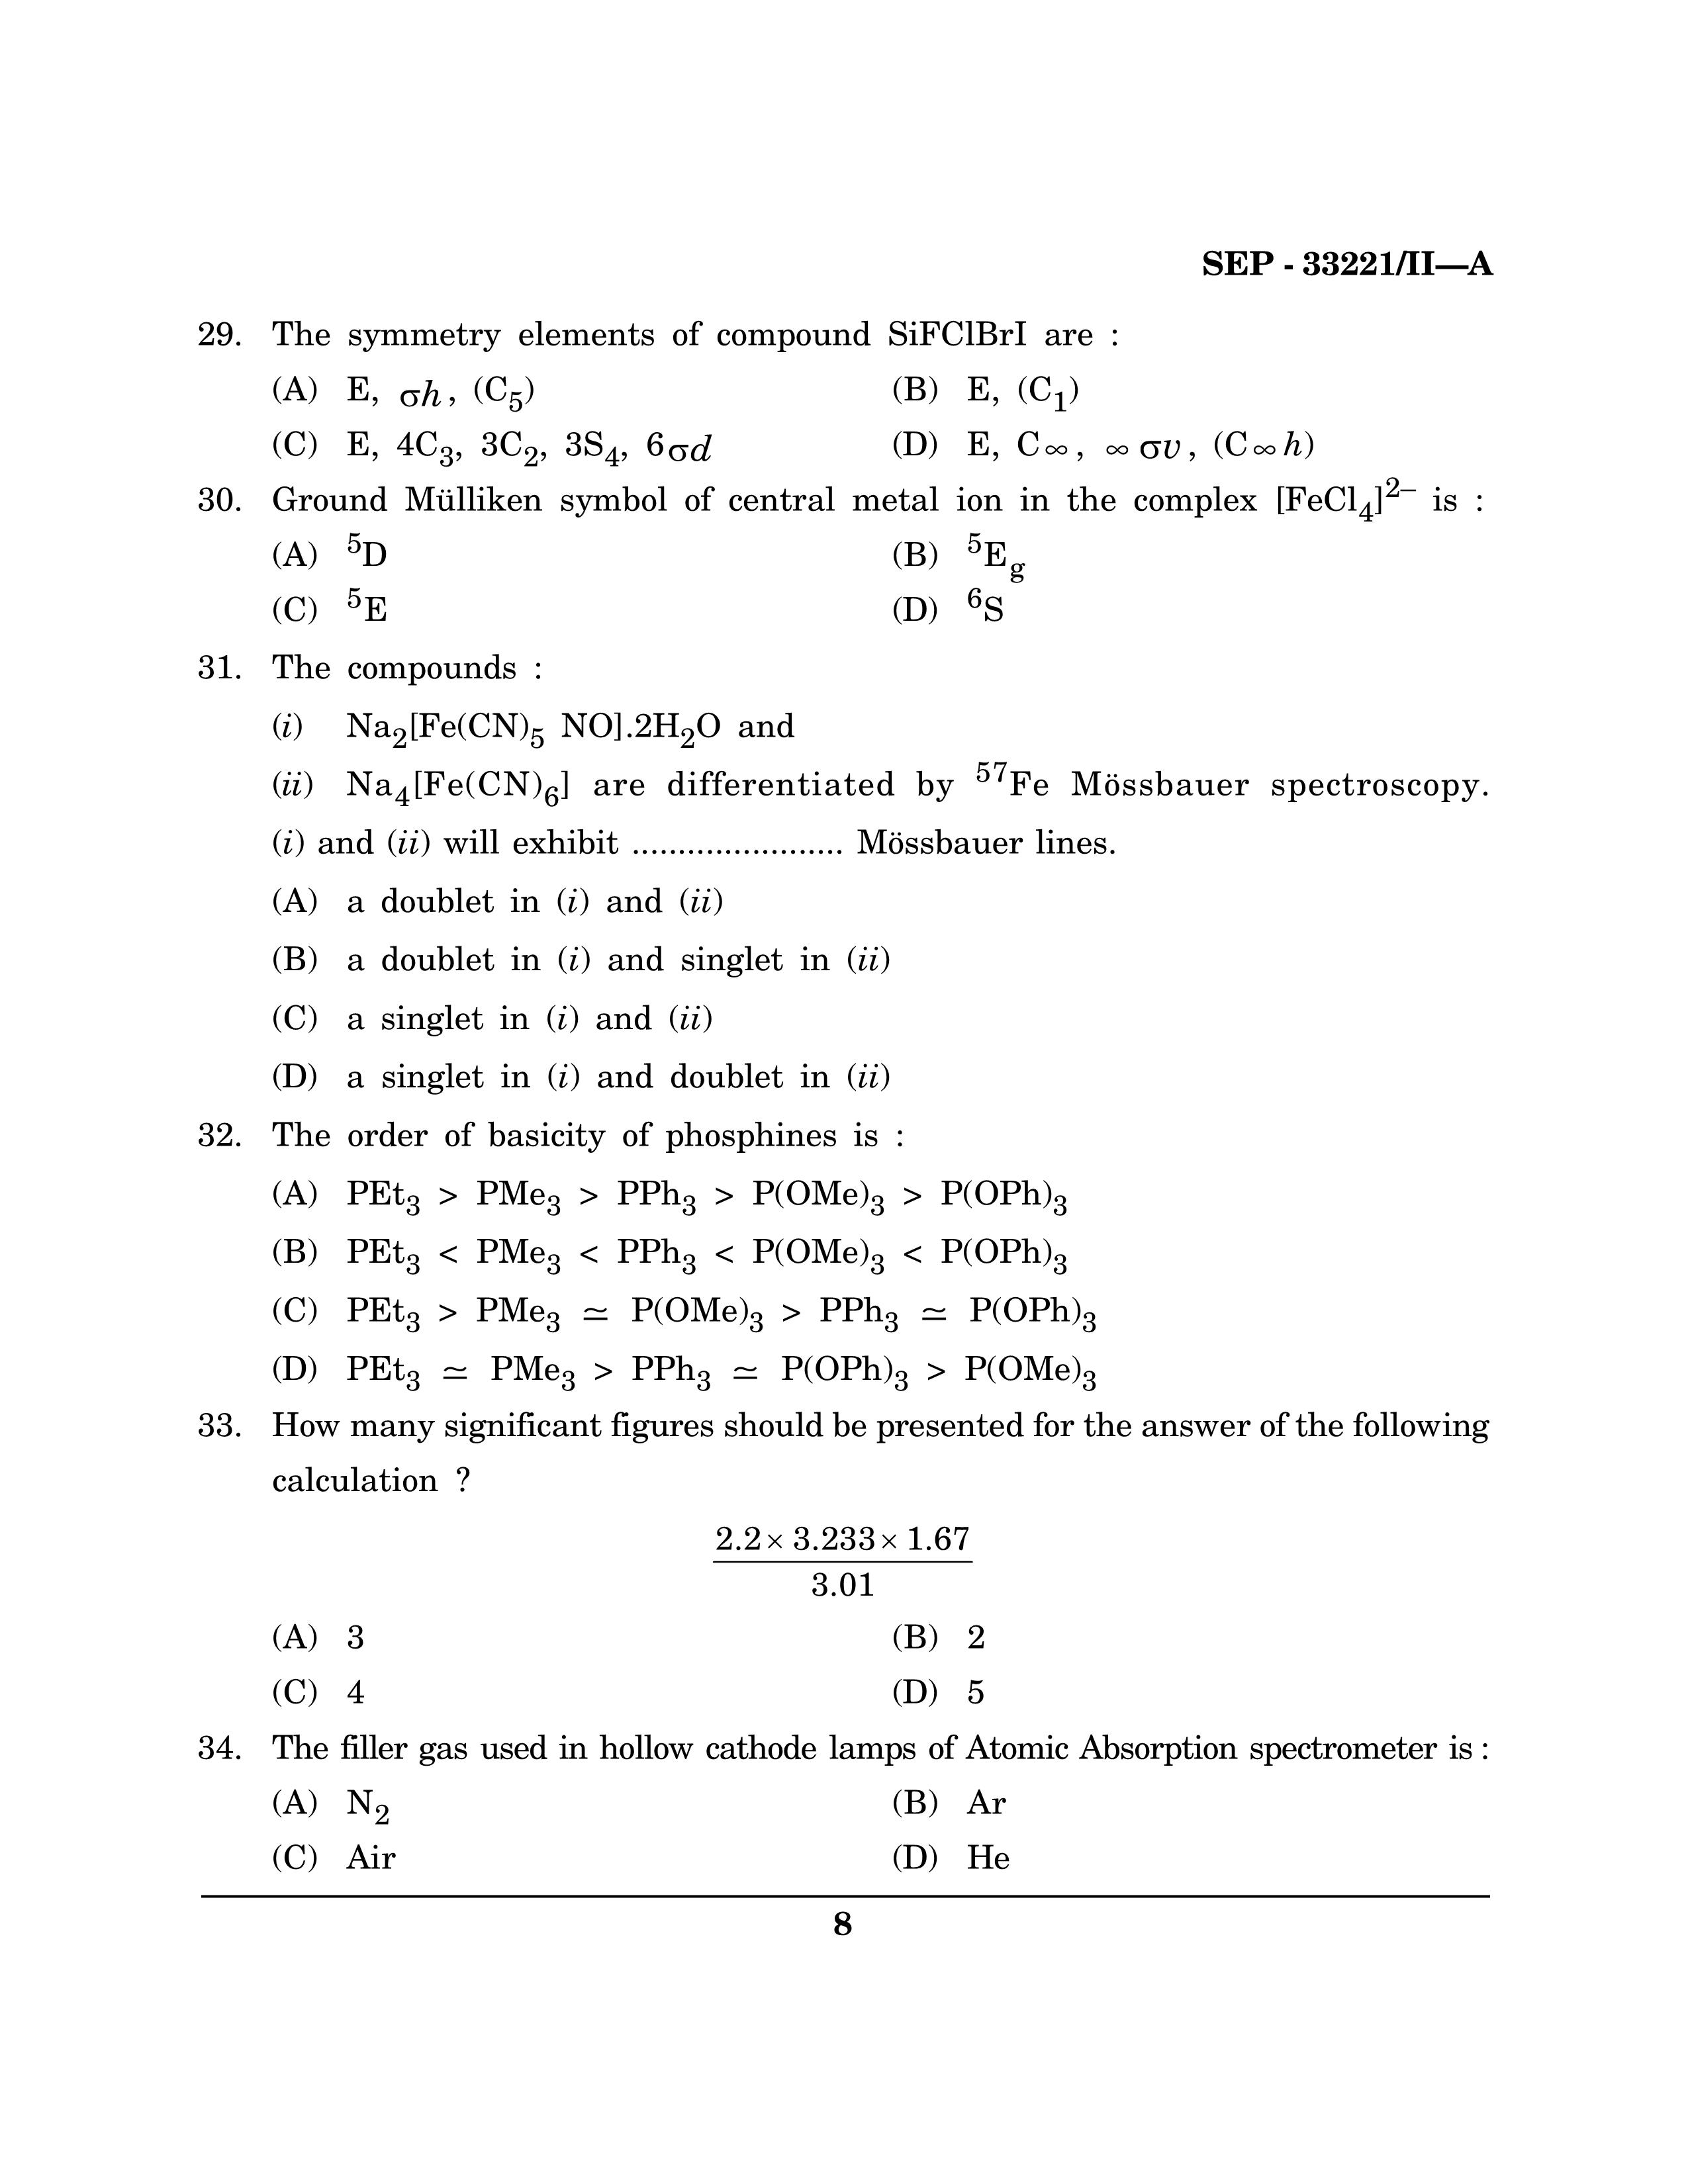 Maharashtra SET Chemical Sciences Exam Question Paper September 2021 7